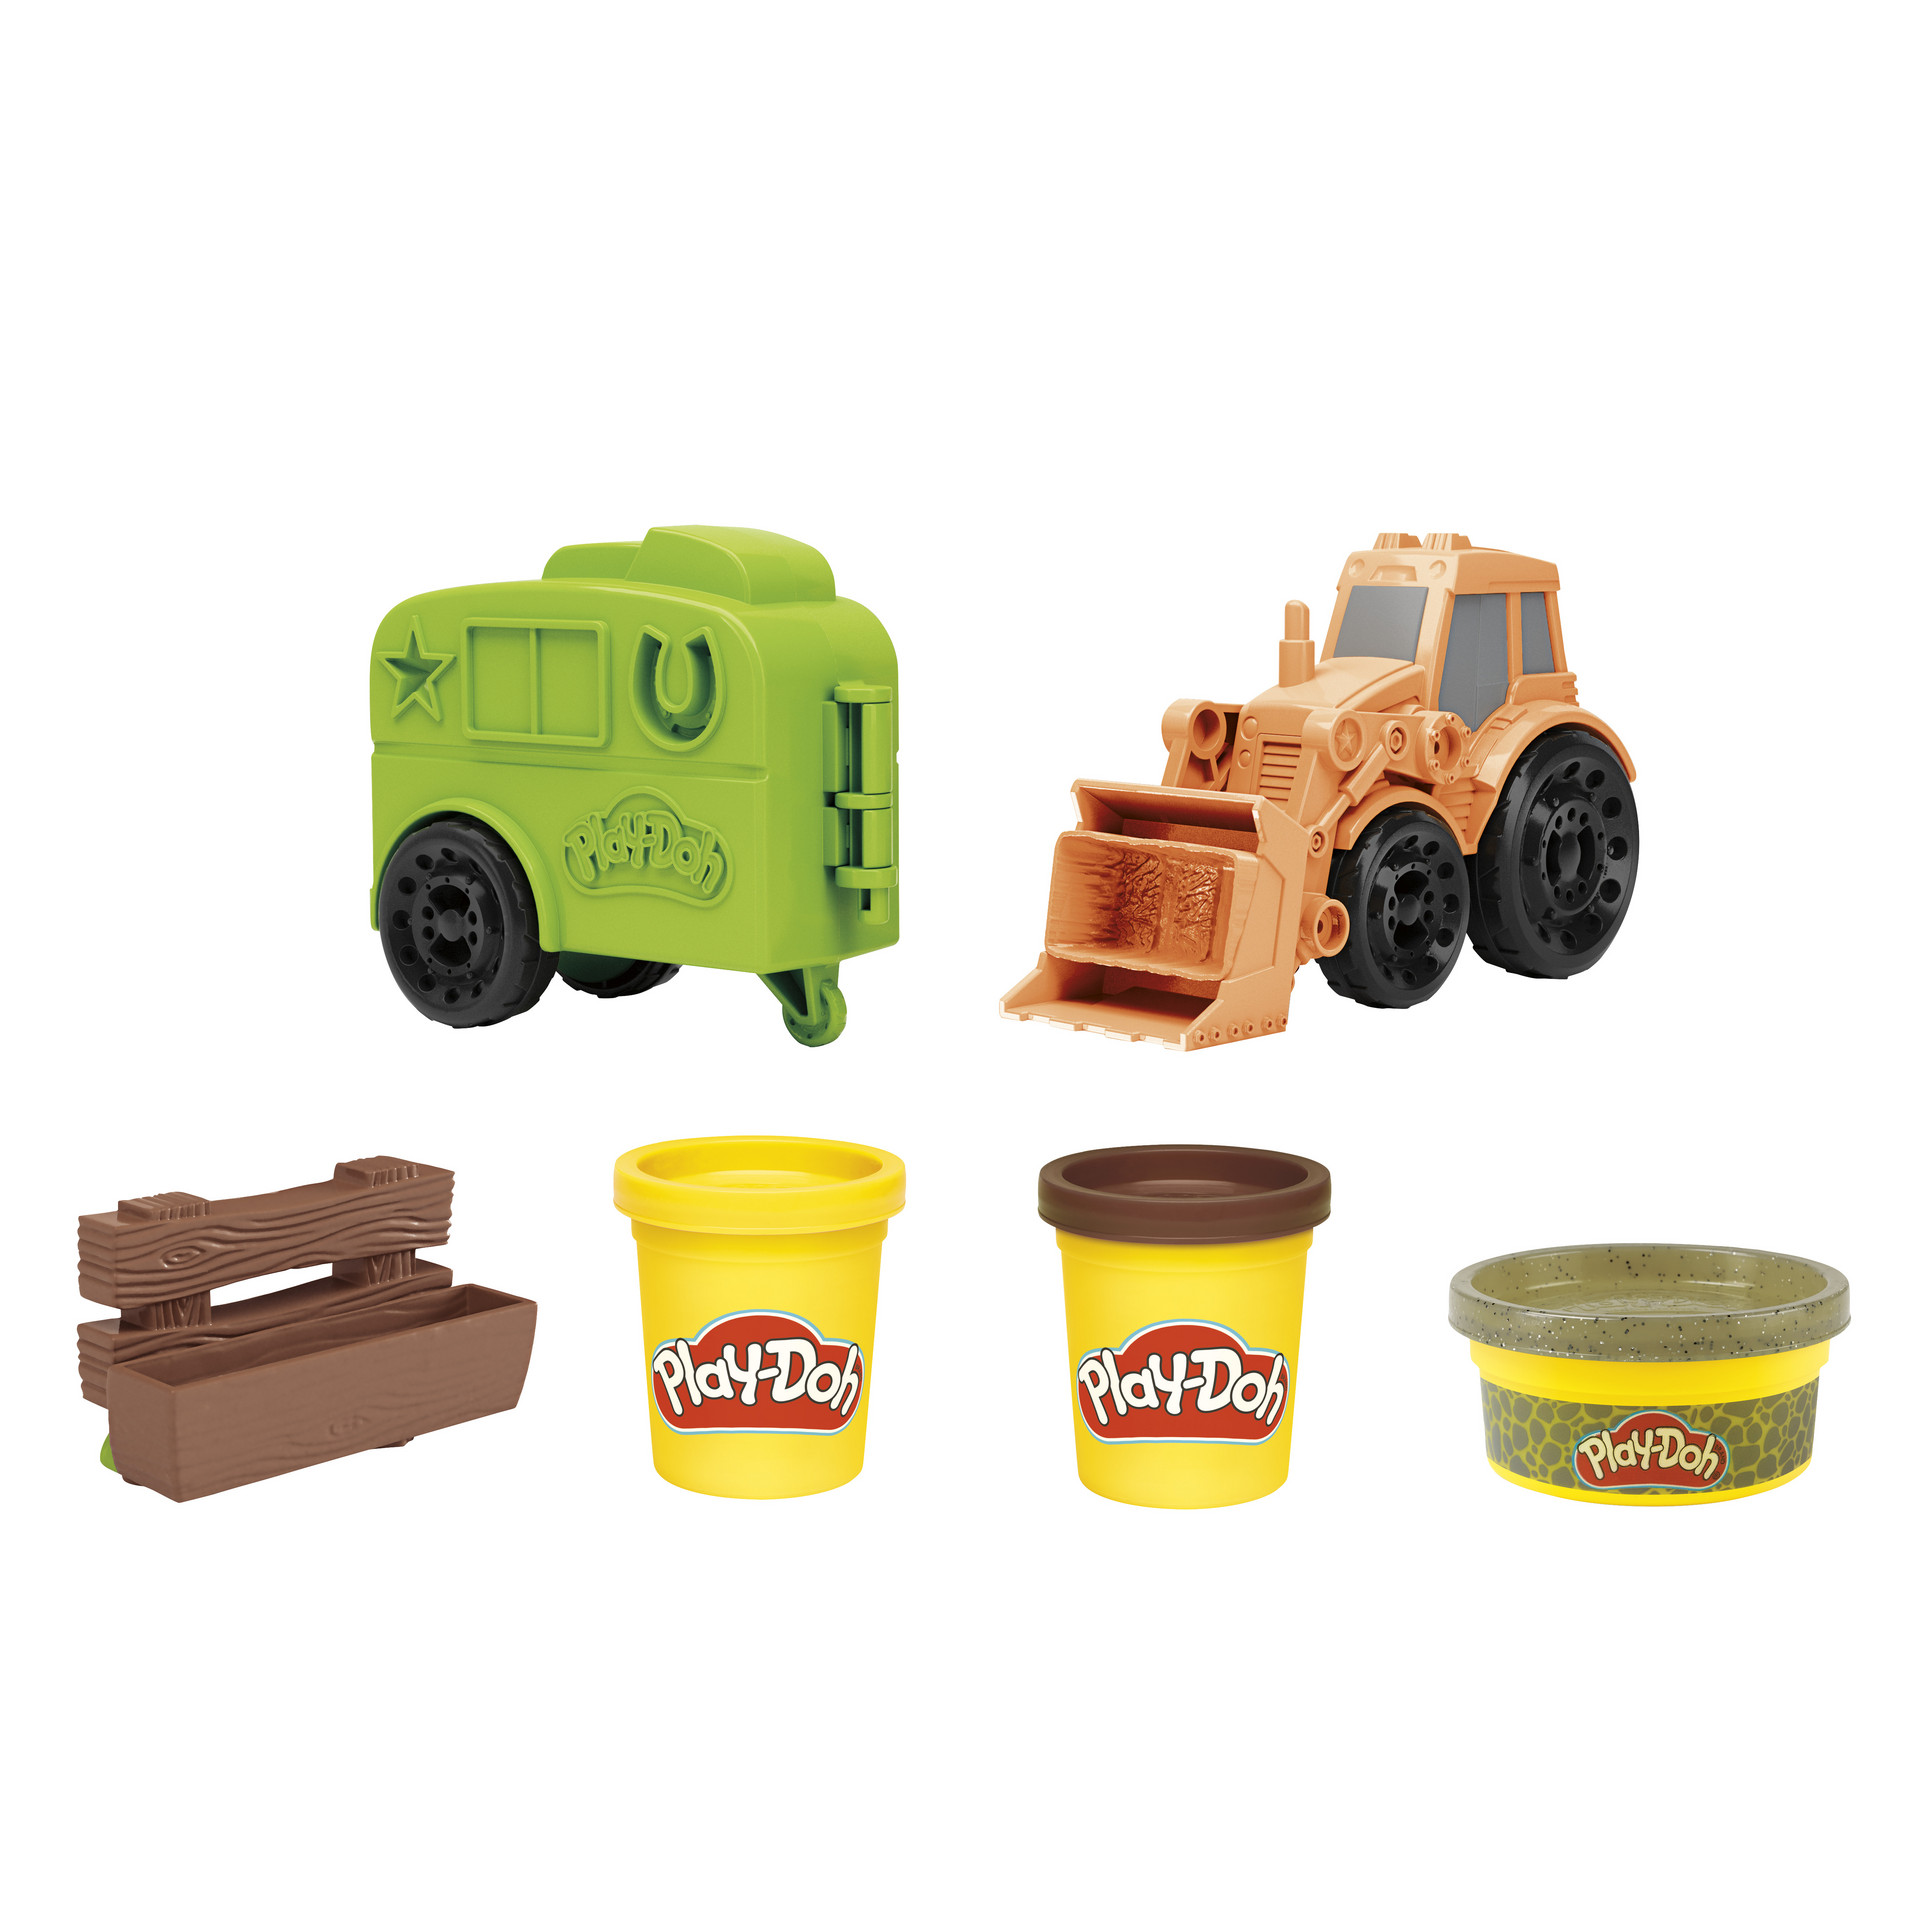 фото Play-doh набор для лепки фермерский трактор